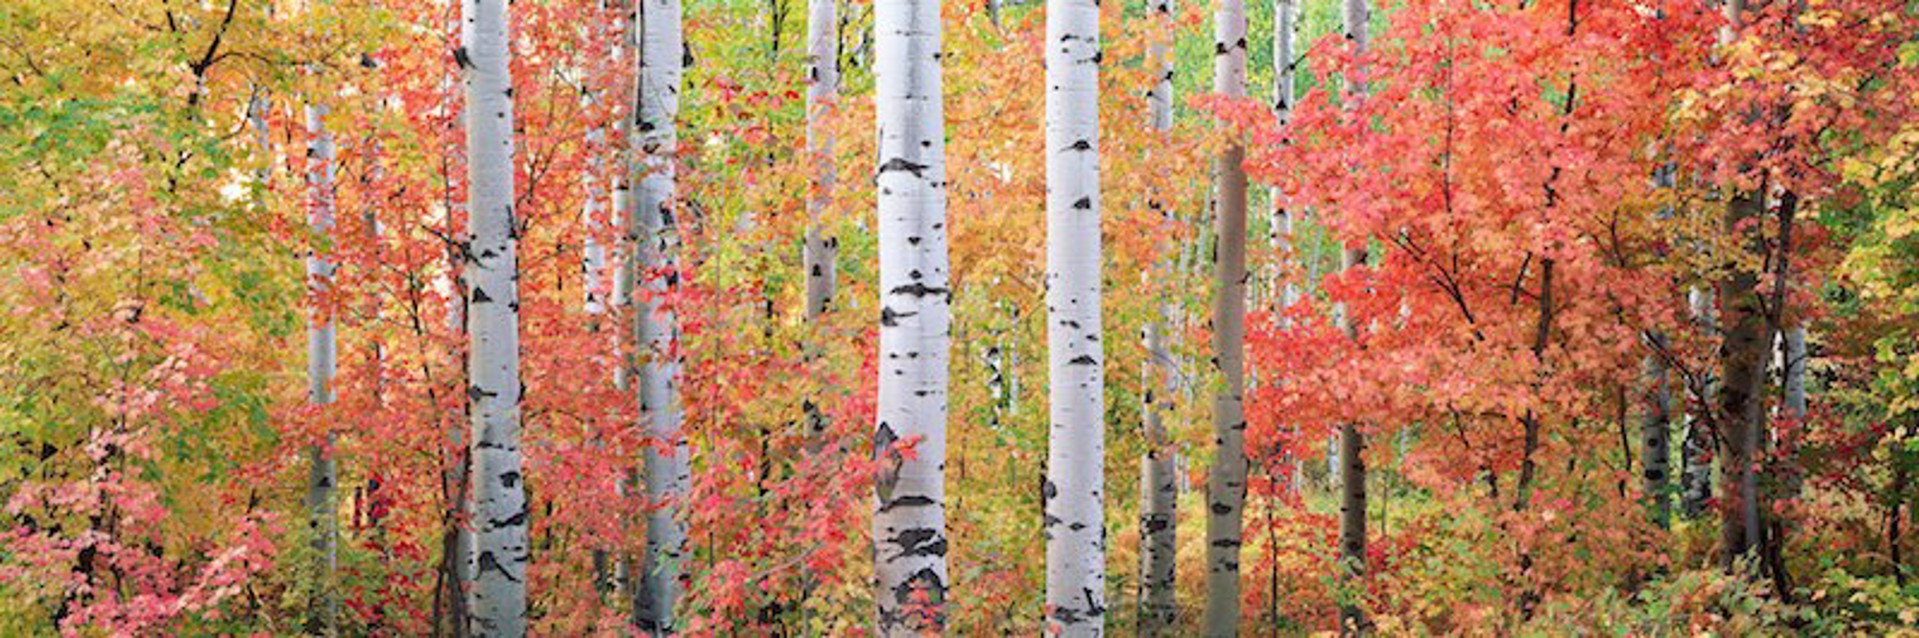 Autumn Forest Light - rolled by Steven Friedman